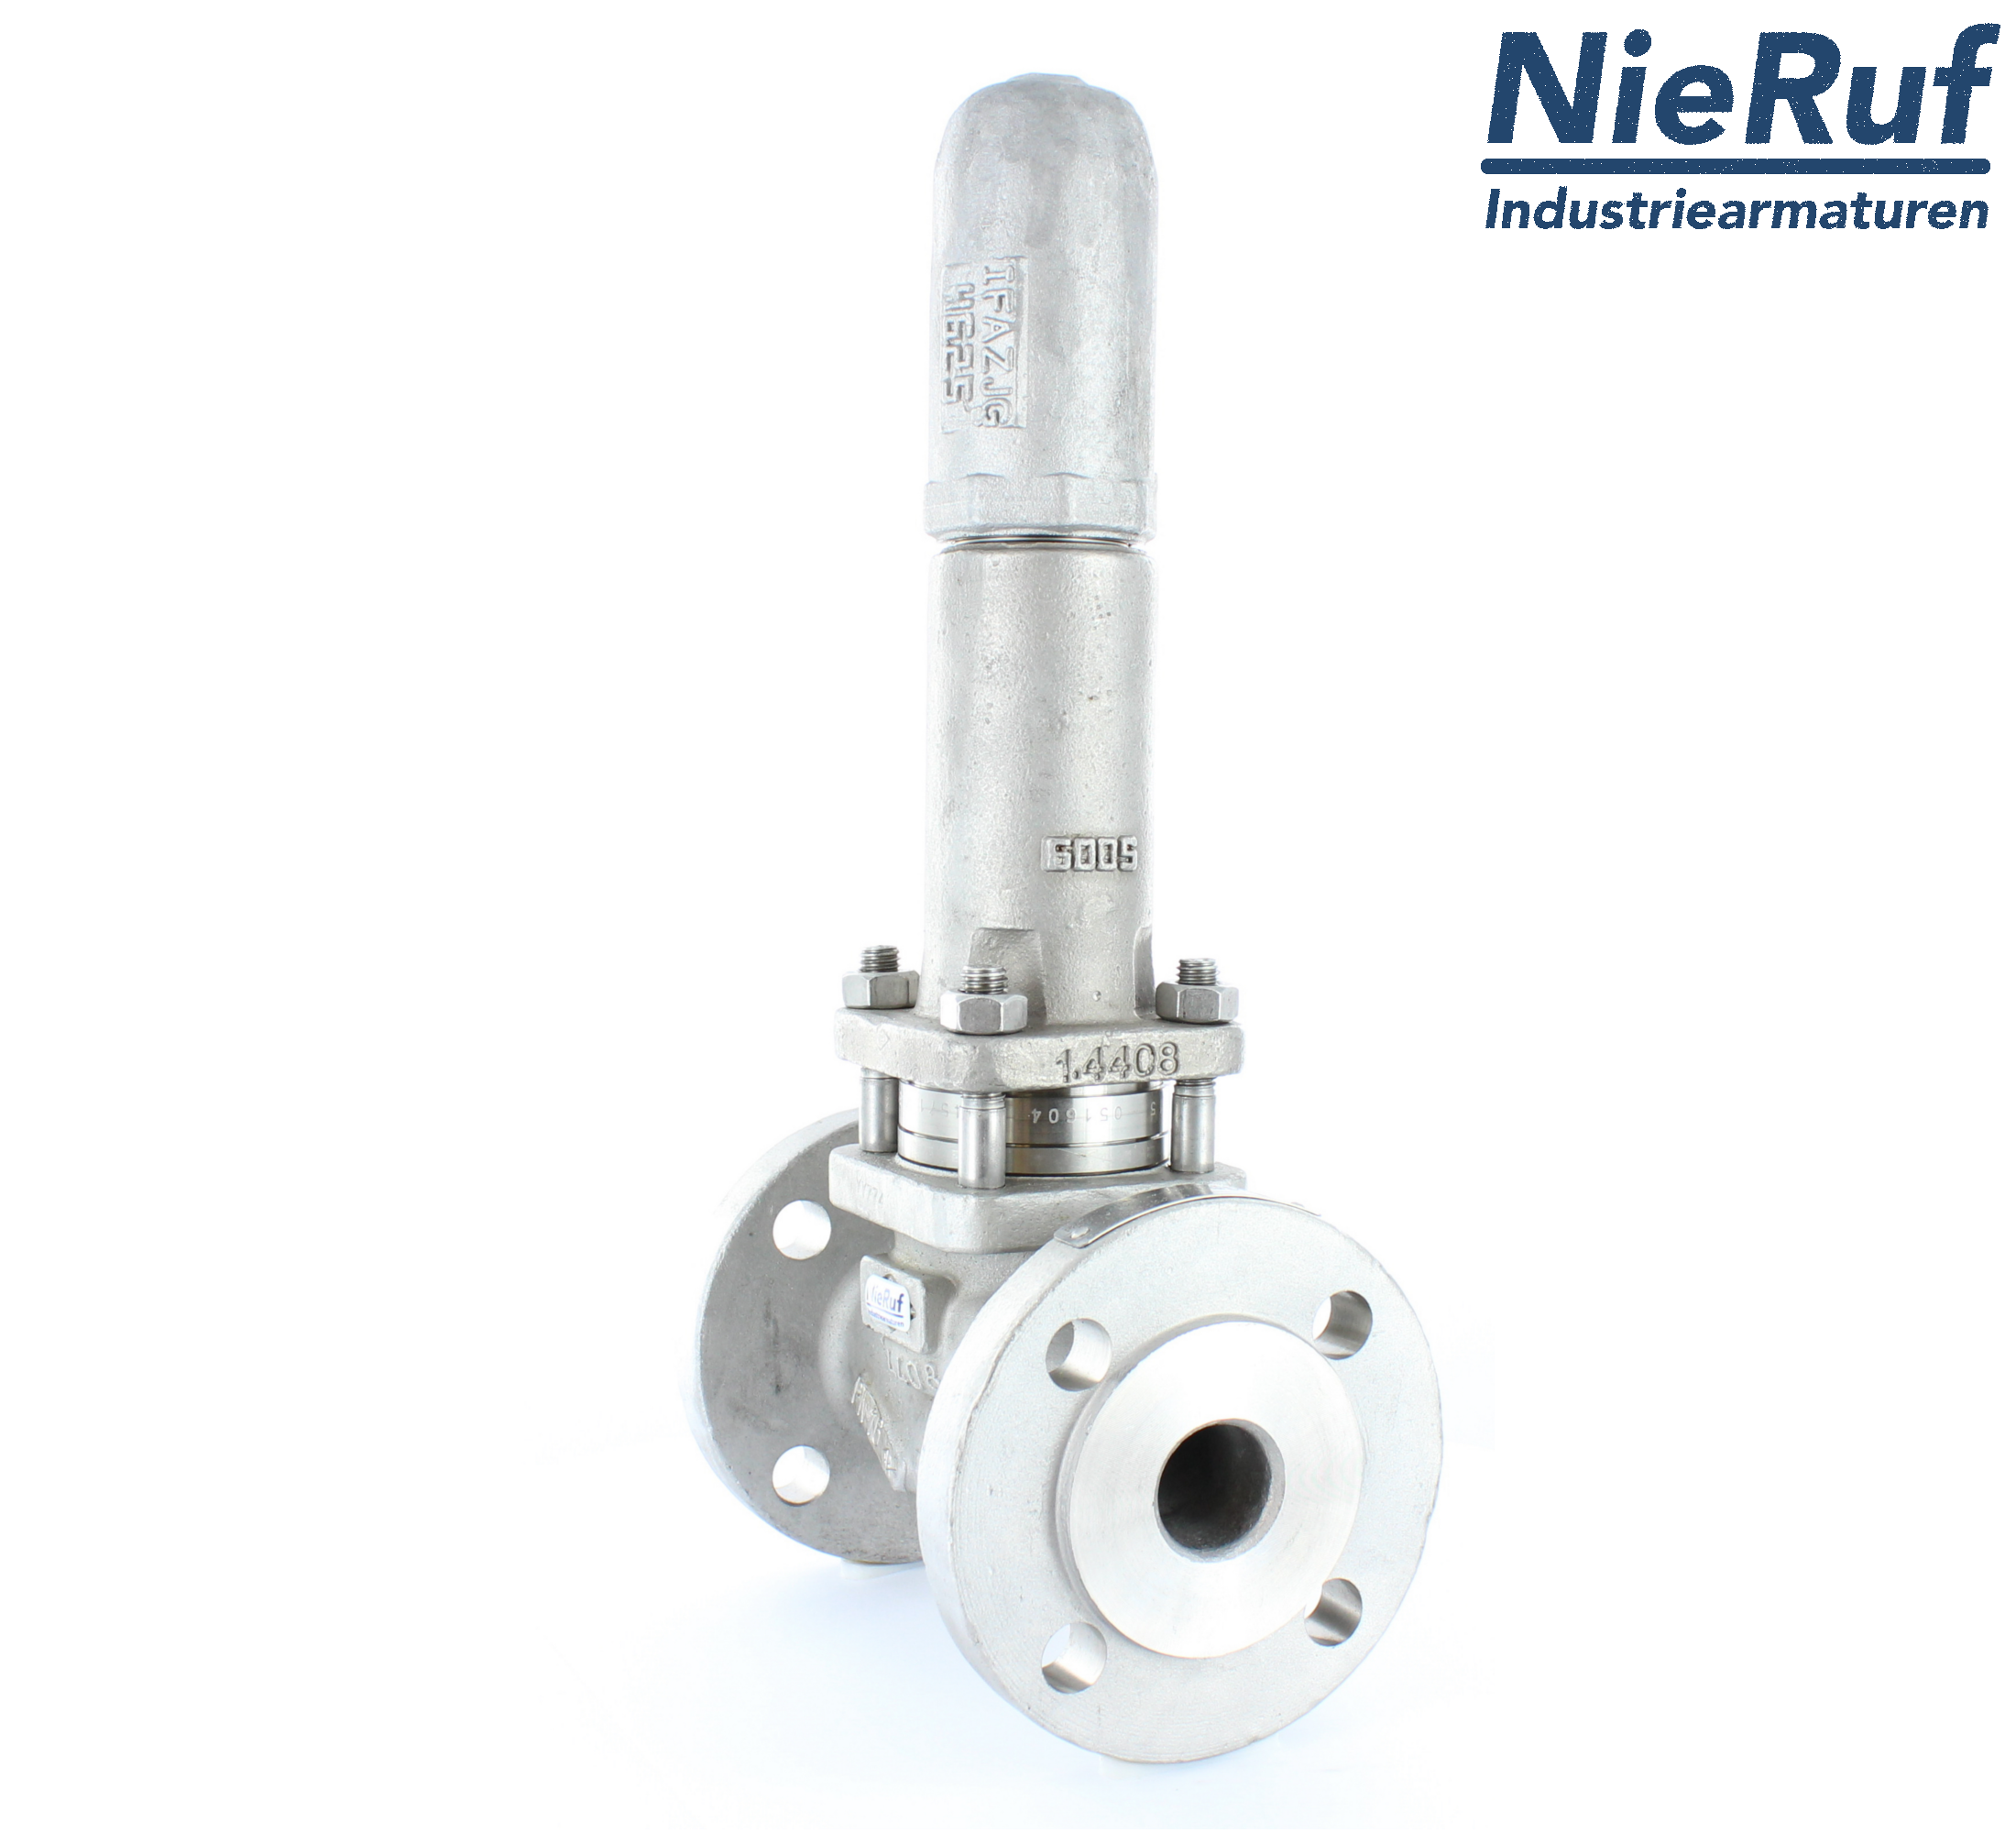 piston overflow valve DN 100 UV13 cast iron 1.0619+N 0,5 - 1,5 bar